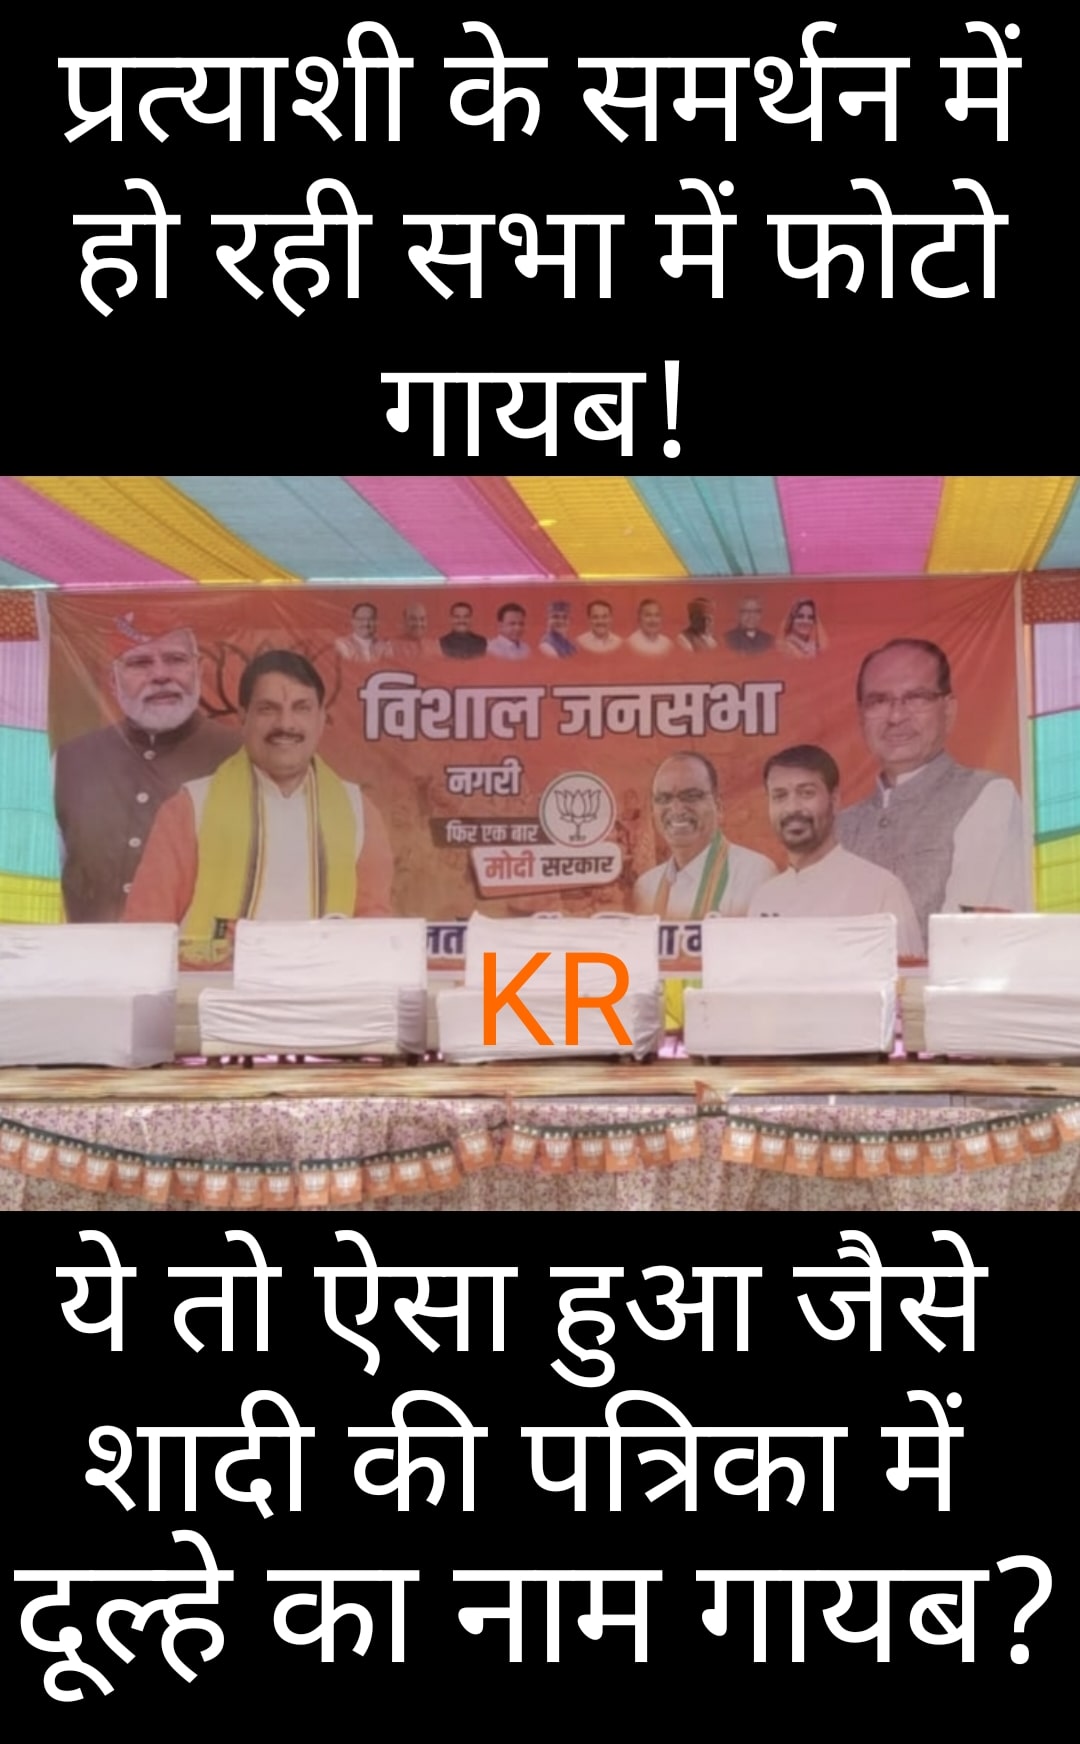 #CM के बाद पूर्व CM को भी मैदान में आना पड़ रहा है... भाजपा प्रत्याशी का माहौल पिछले दो चुनाव जैसा तो नही है...।